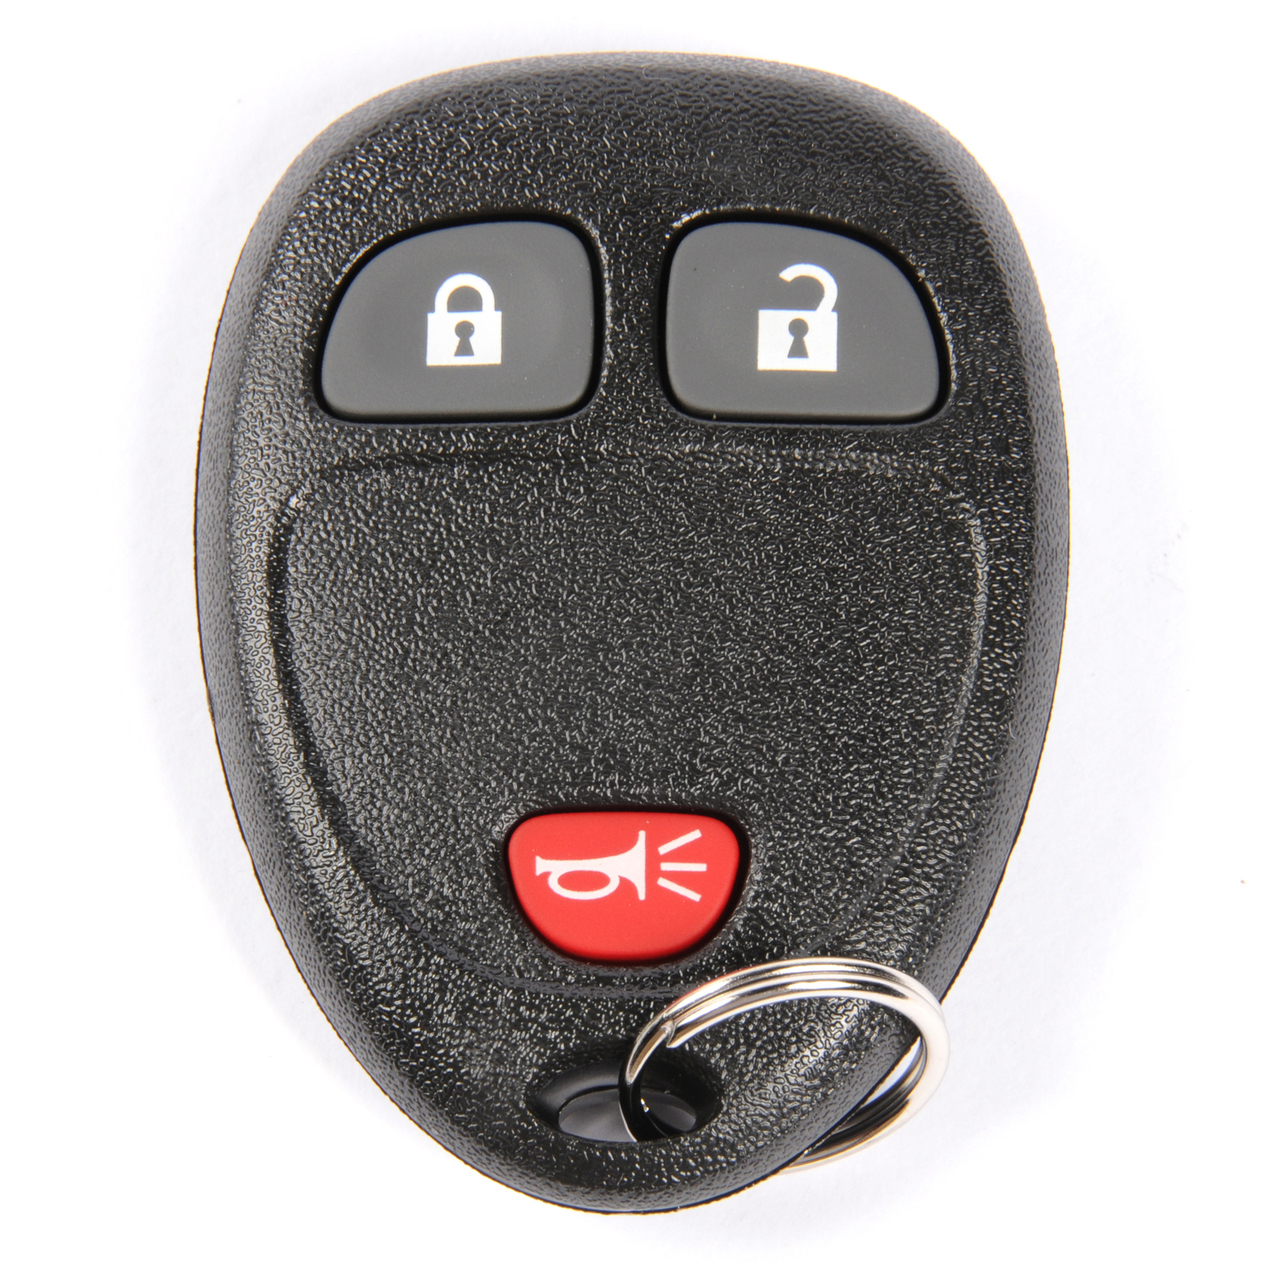 2008 Chevy Silverado Keyless Entry Door Lock Remote Key Fob Orig OEM Alarm